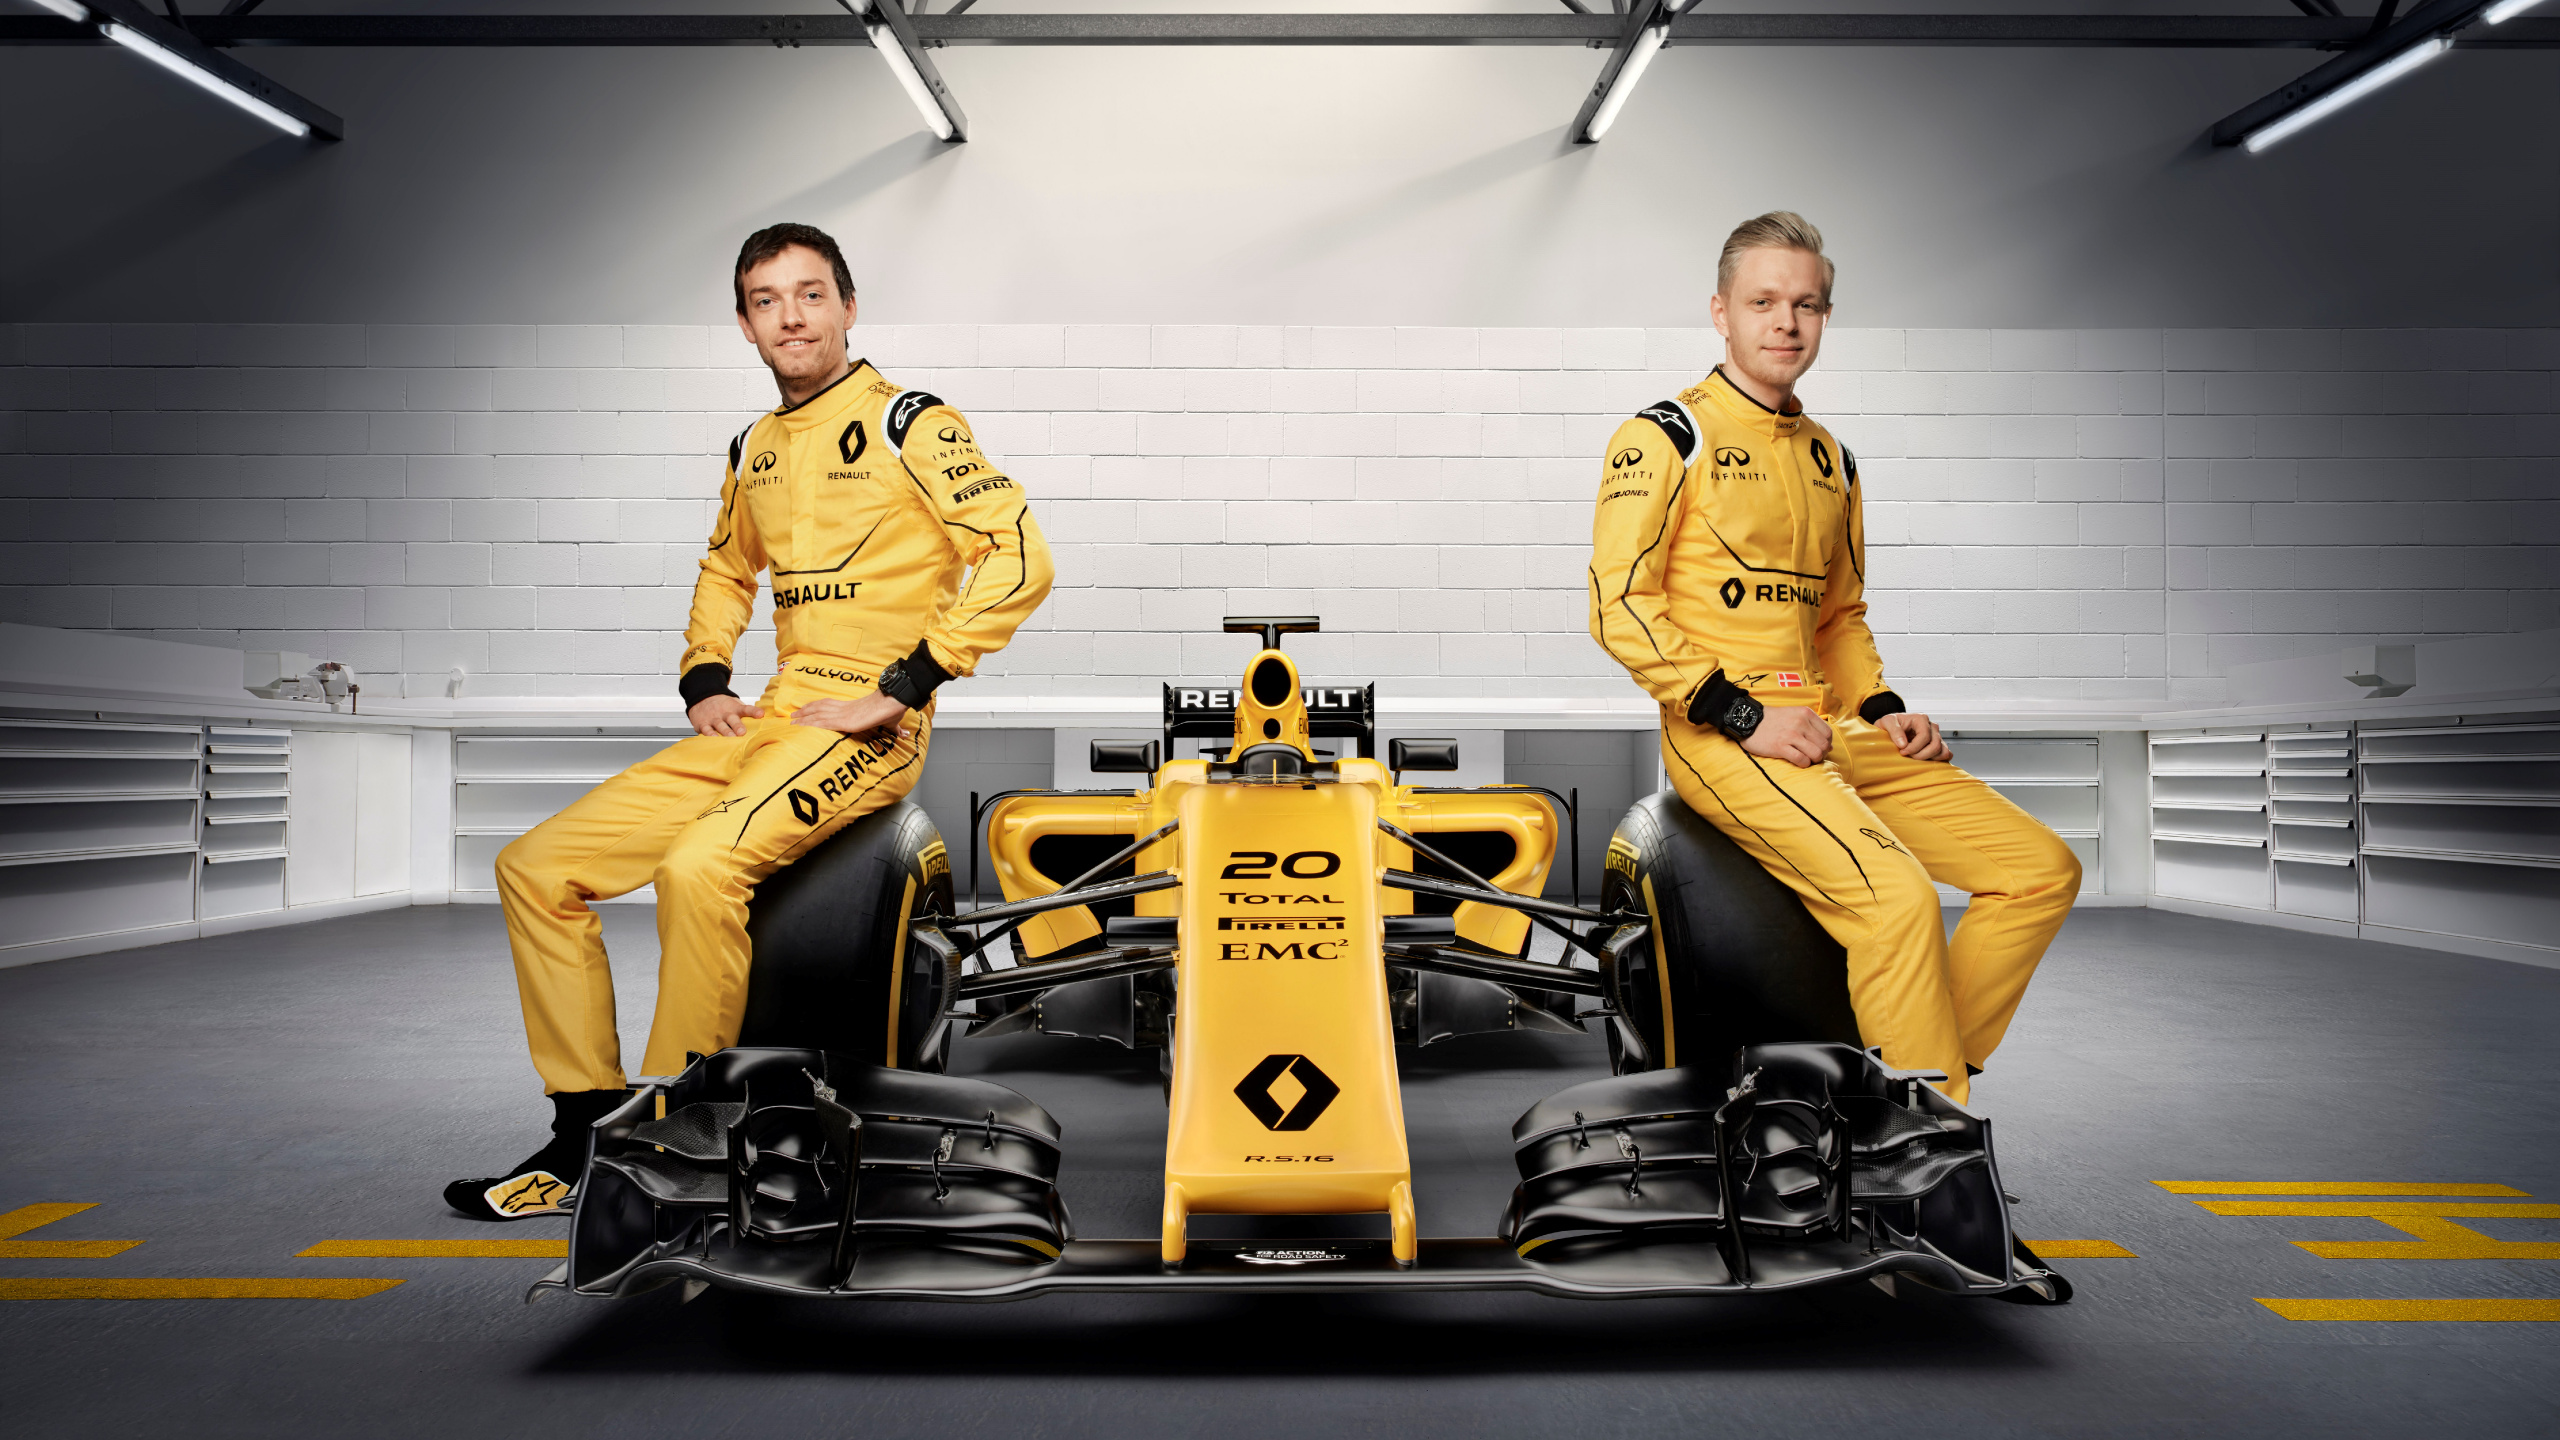 2016式的一个世界冠军, 汽车赛车, 雷诺, 黄色的, 团队 壁纸 2560x1440 允许